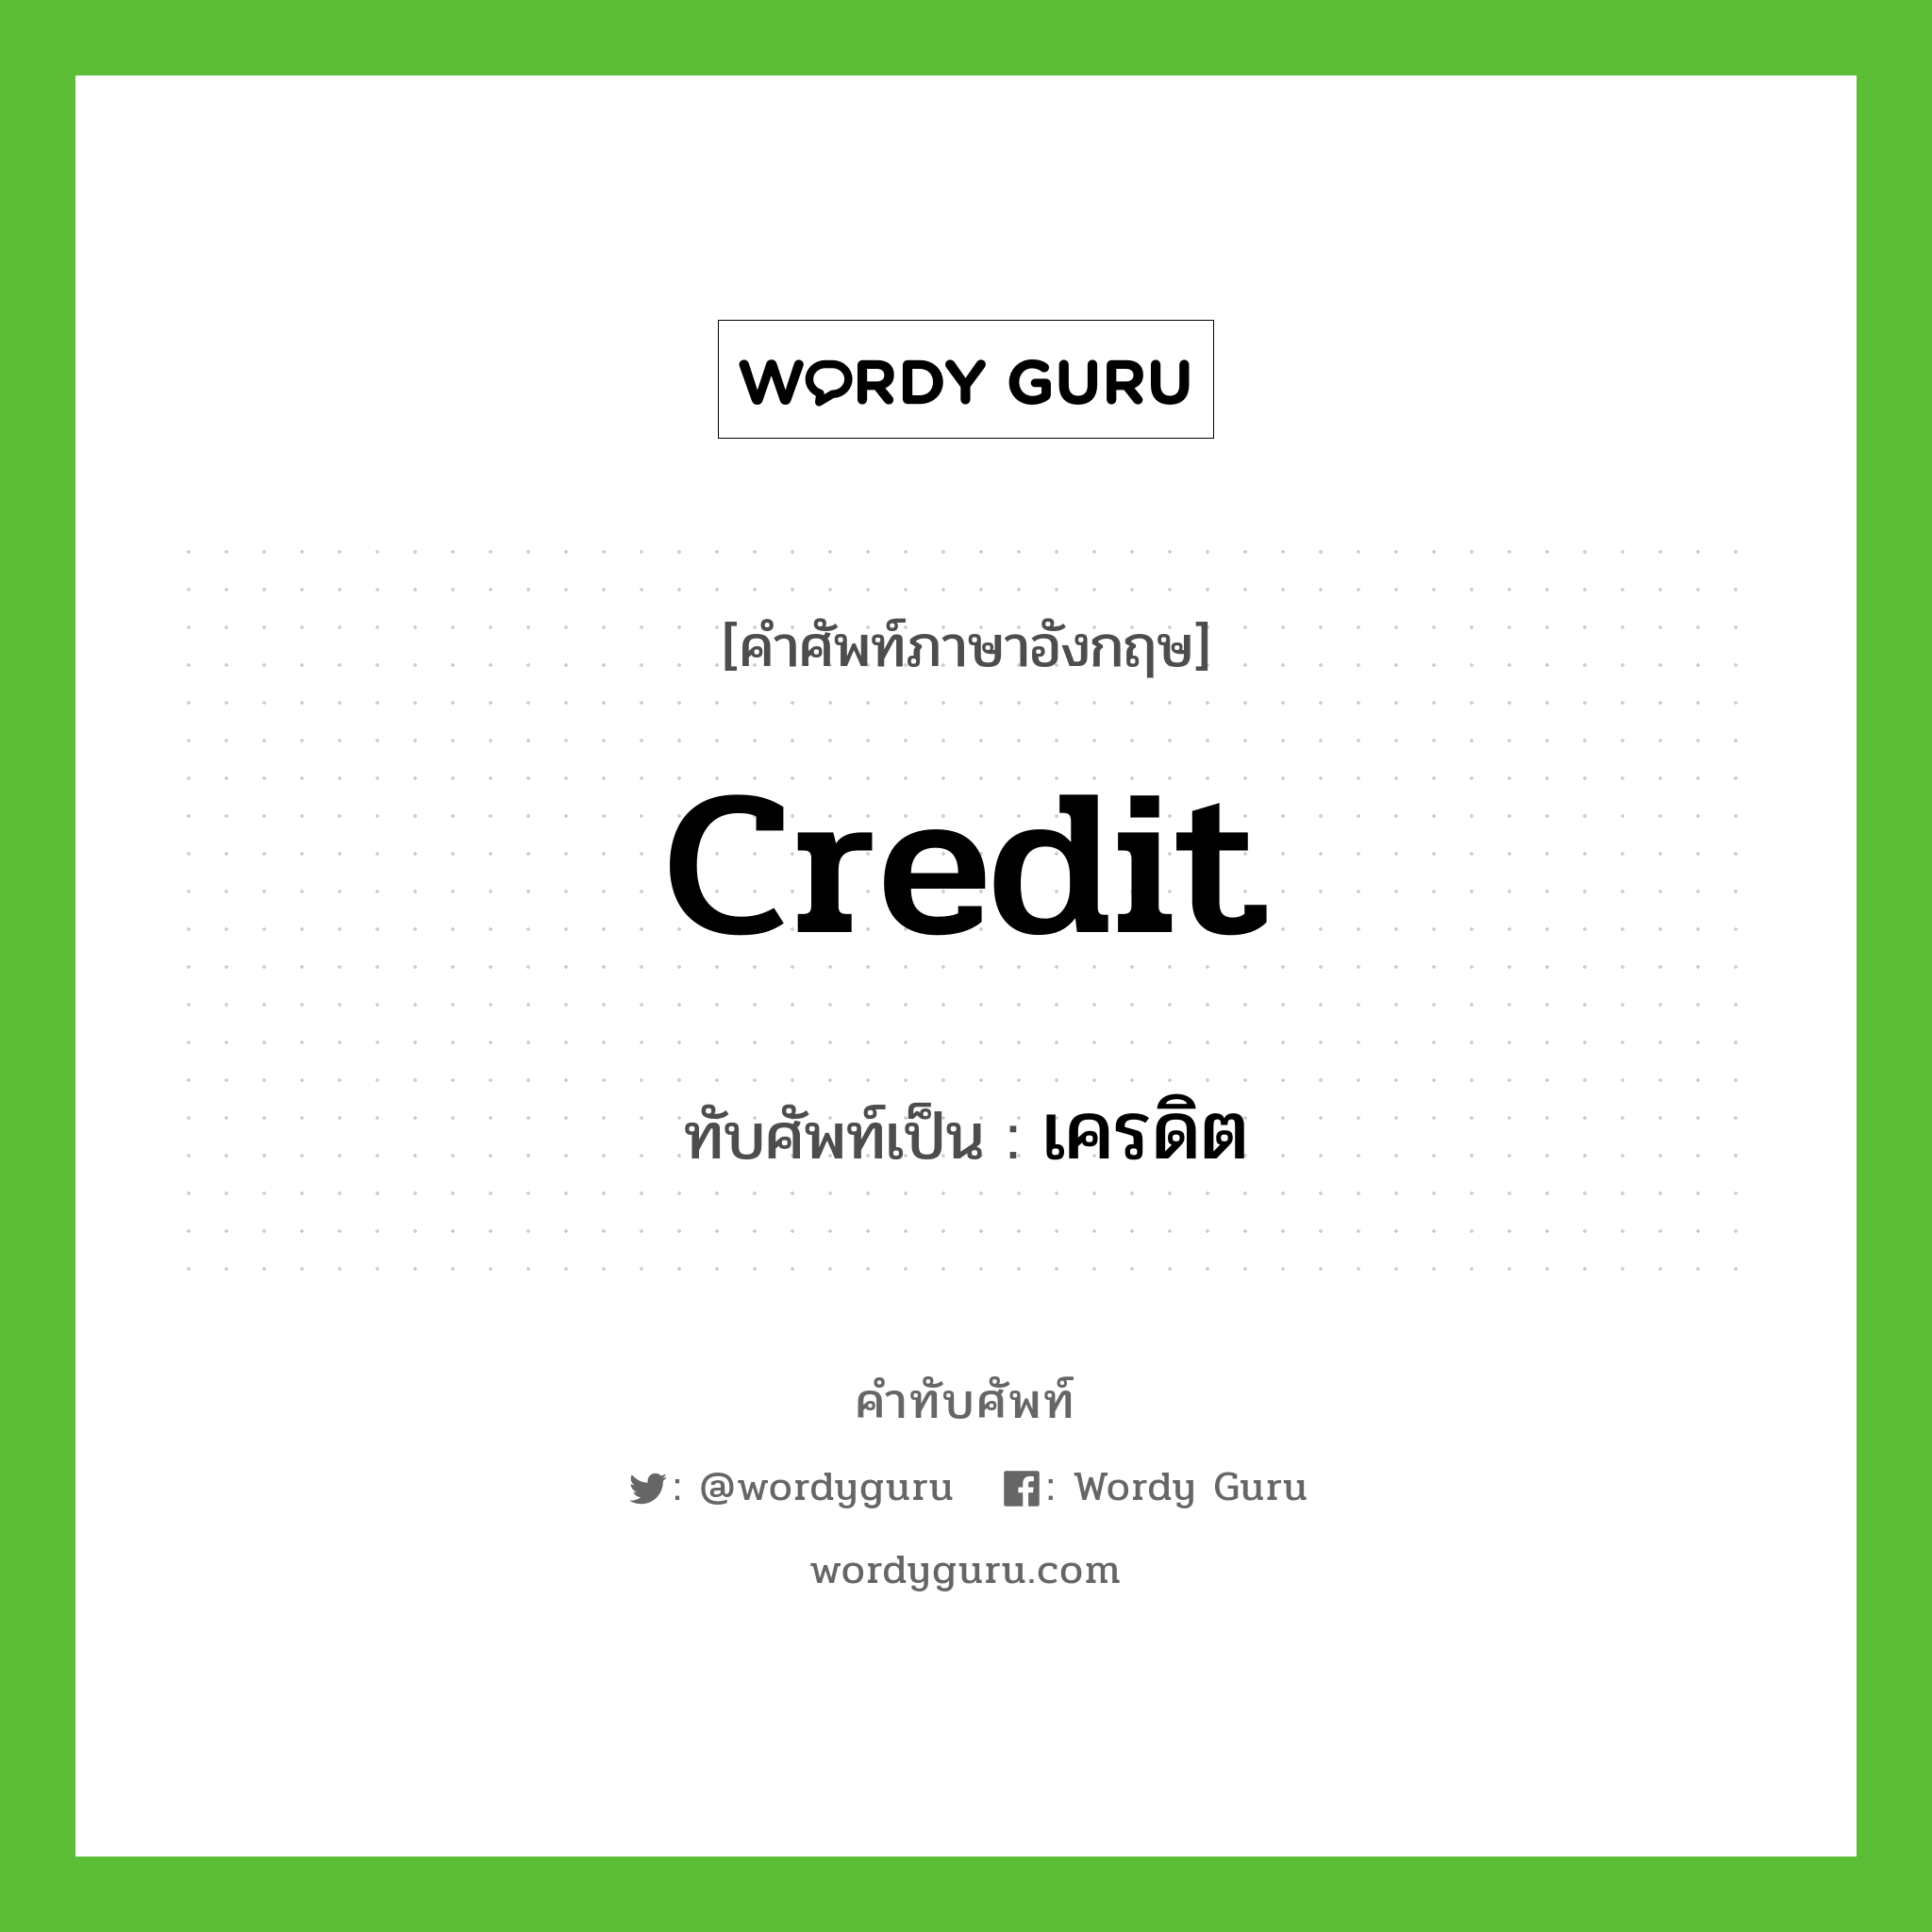 credit เขียนเป็นคำไทยว่าอะไร?, คำศัพท์ภาษาอังกฤษ credit ทับศัพท์เป็น เครดิต